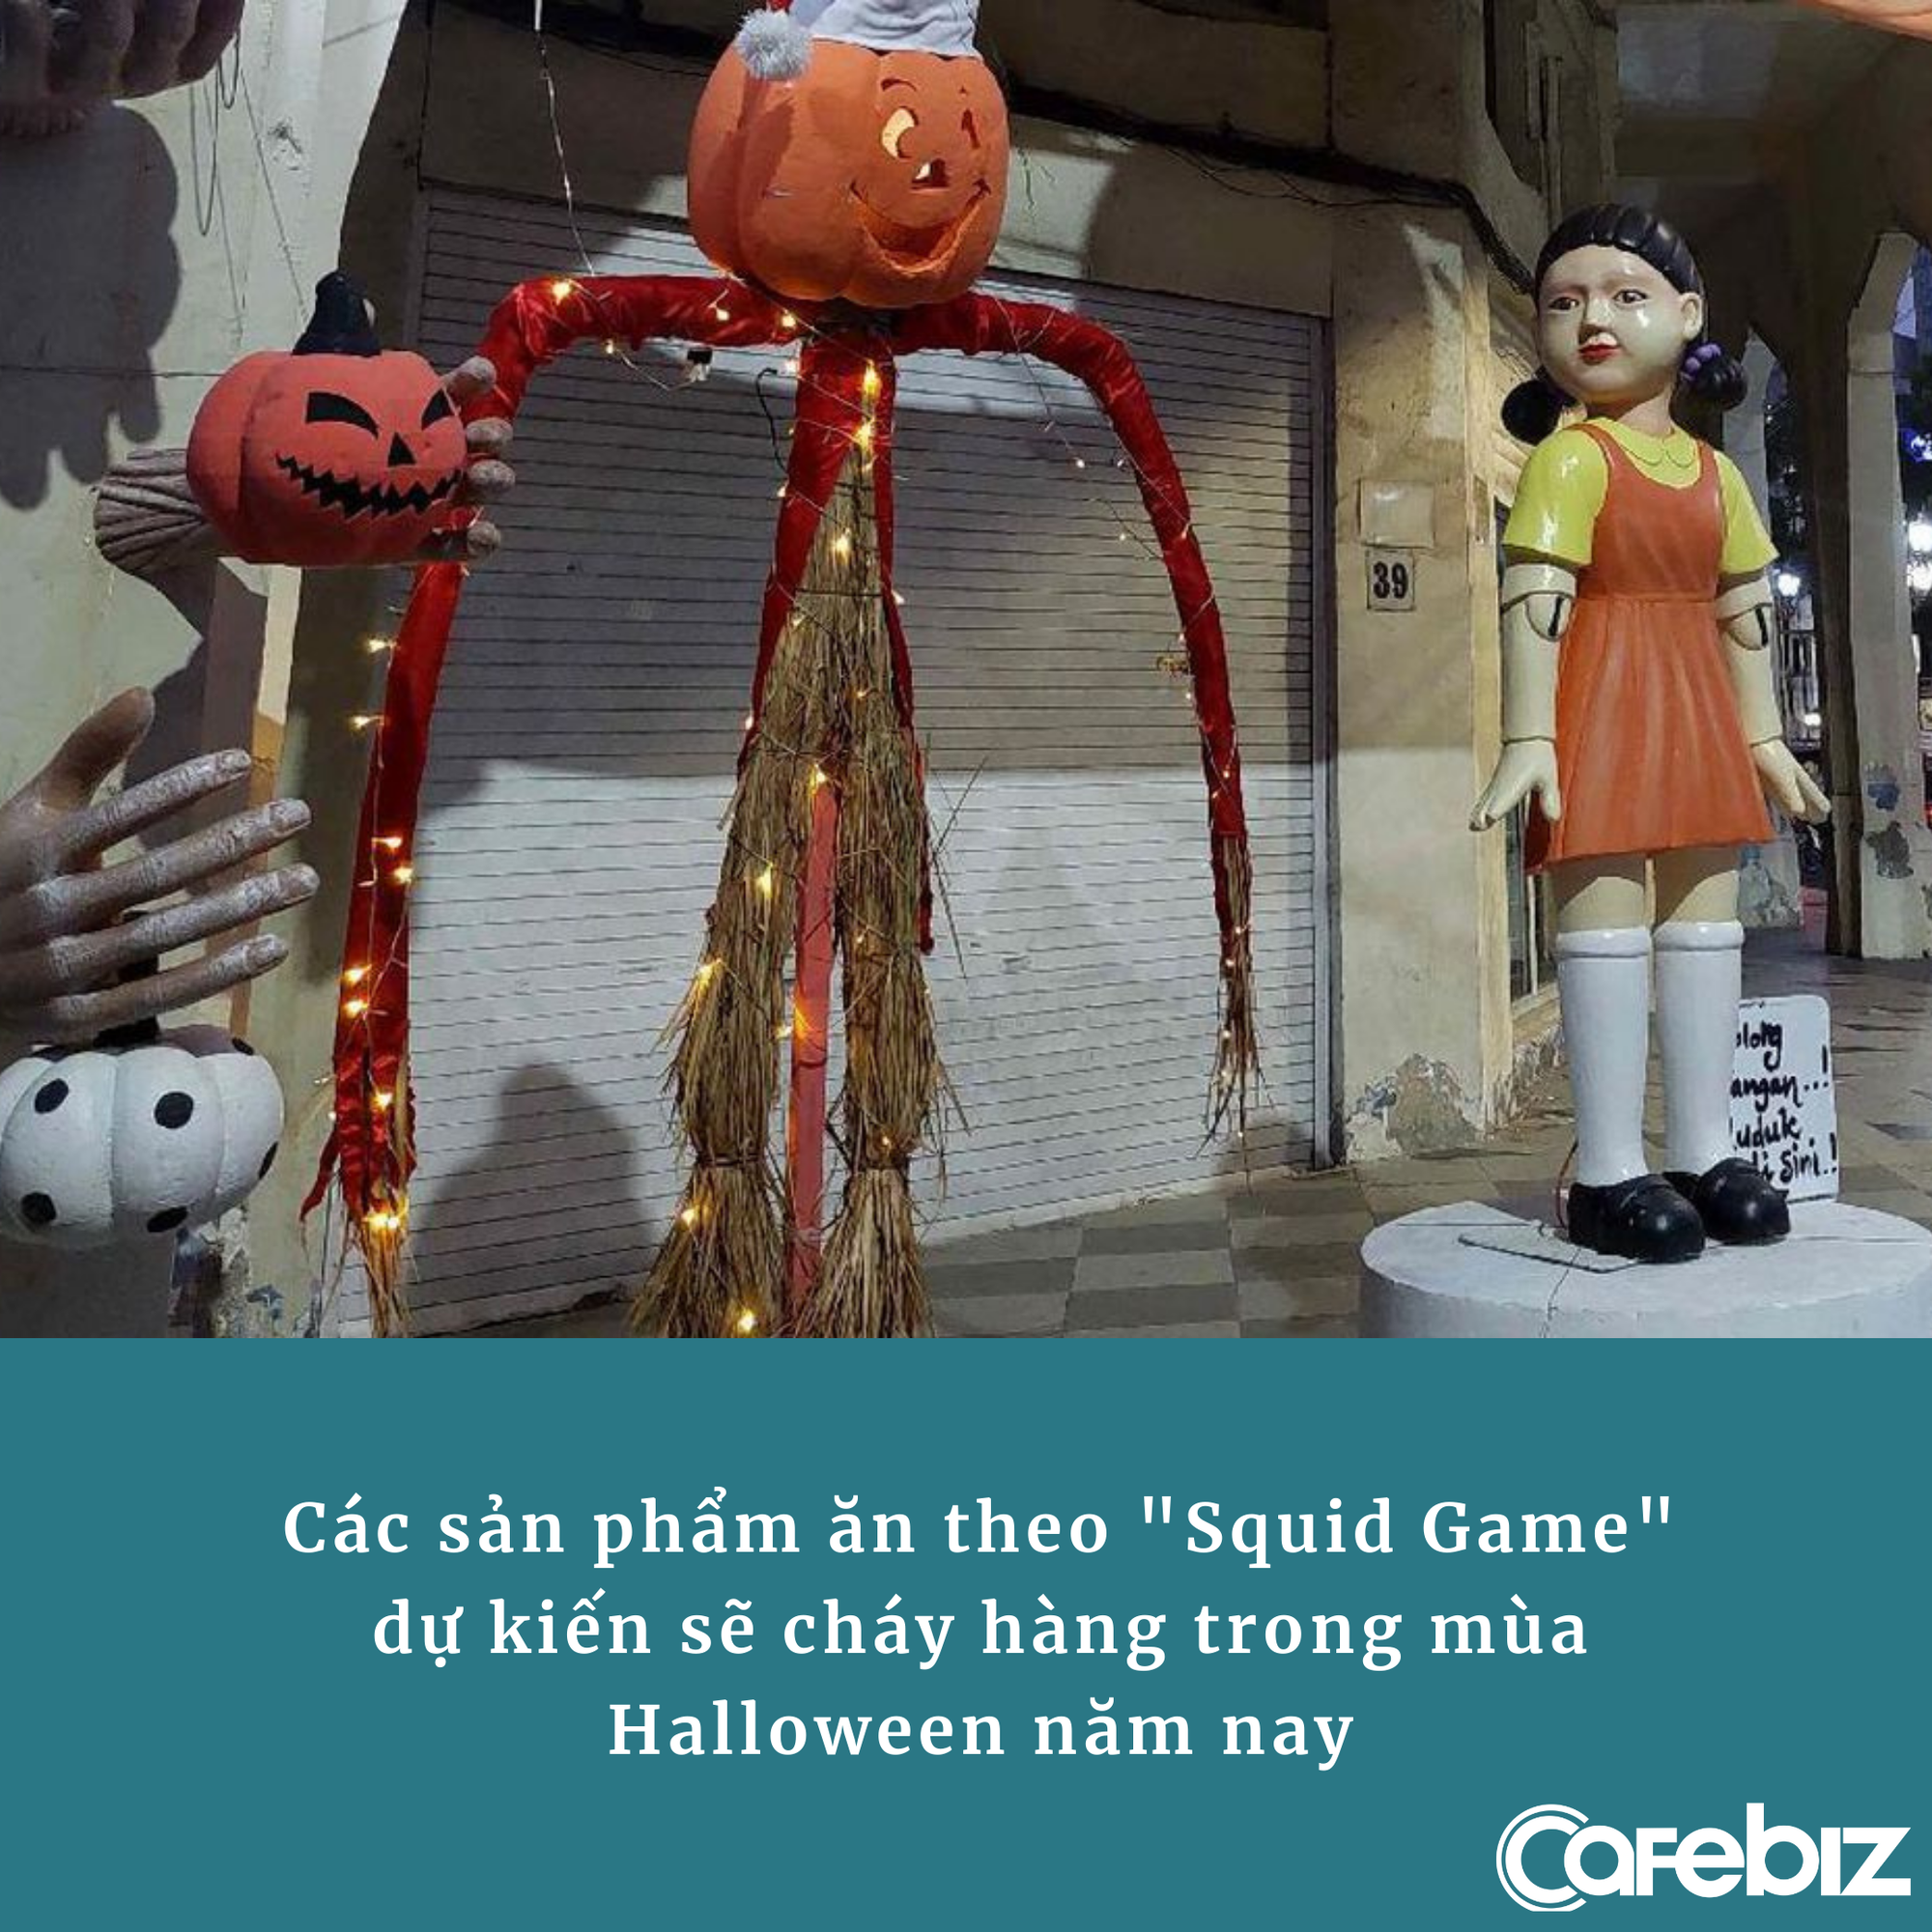 ‘Đỉnh’ như Squid Game: Bị cấm cửa vẫn thành bom tấn, từ quán cafe đến hàng đồ chơi đều kiếm bộn tiền nhờ đồ ăn theo - Ảnh 2.